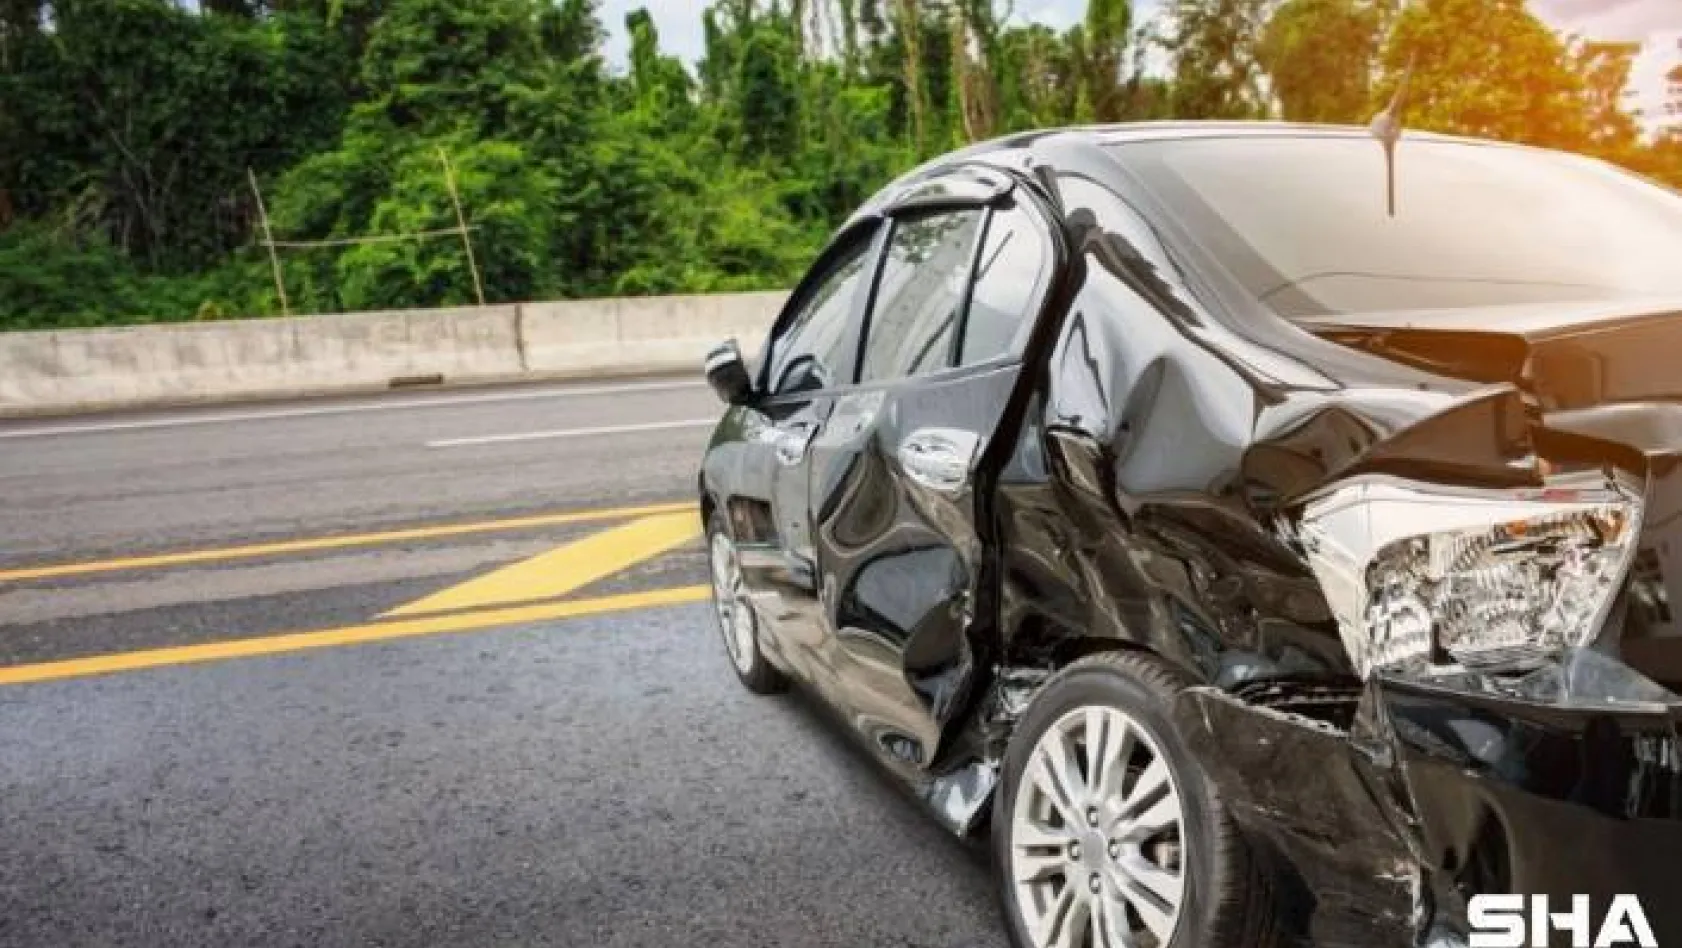 Ölümlü trafik kazaları yüzde 9 azaldı